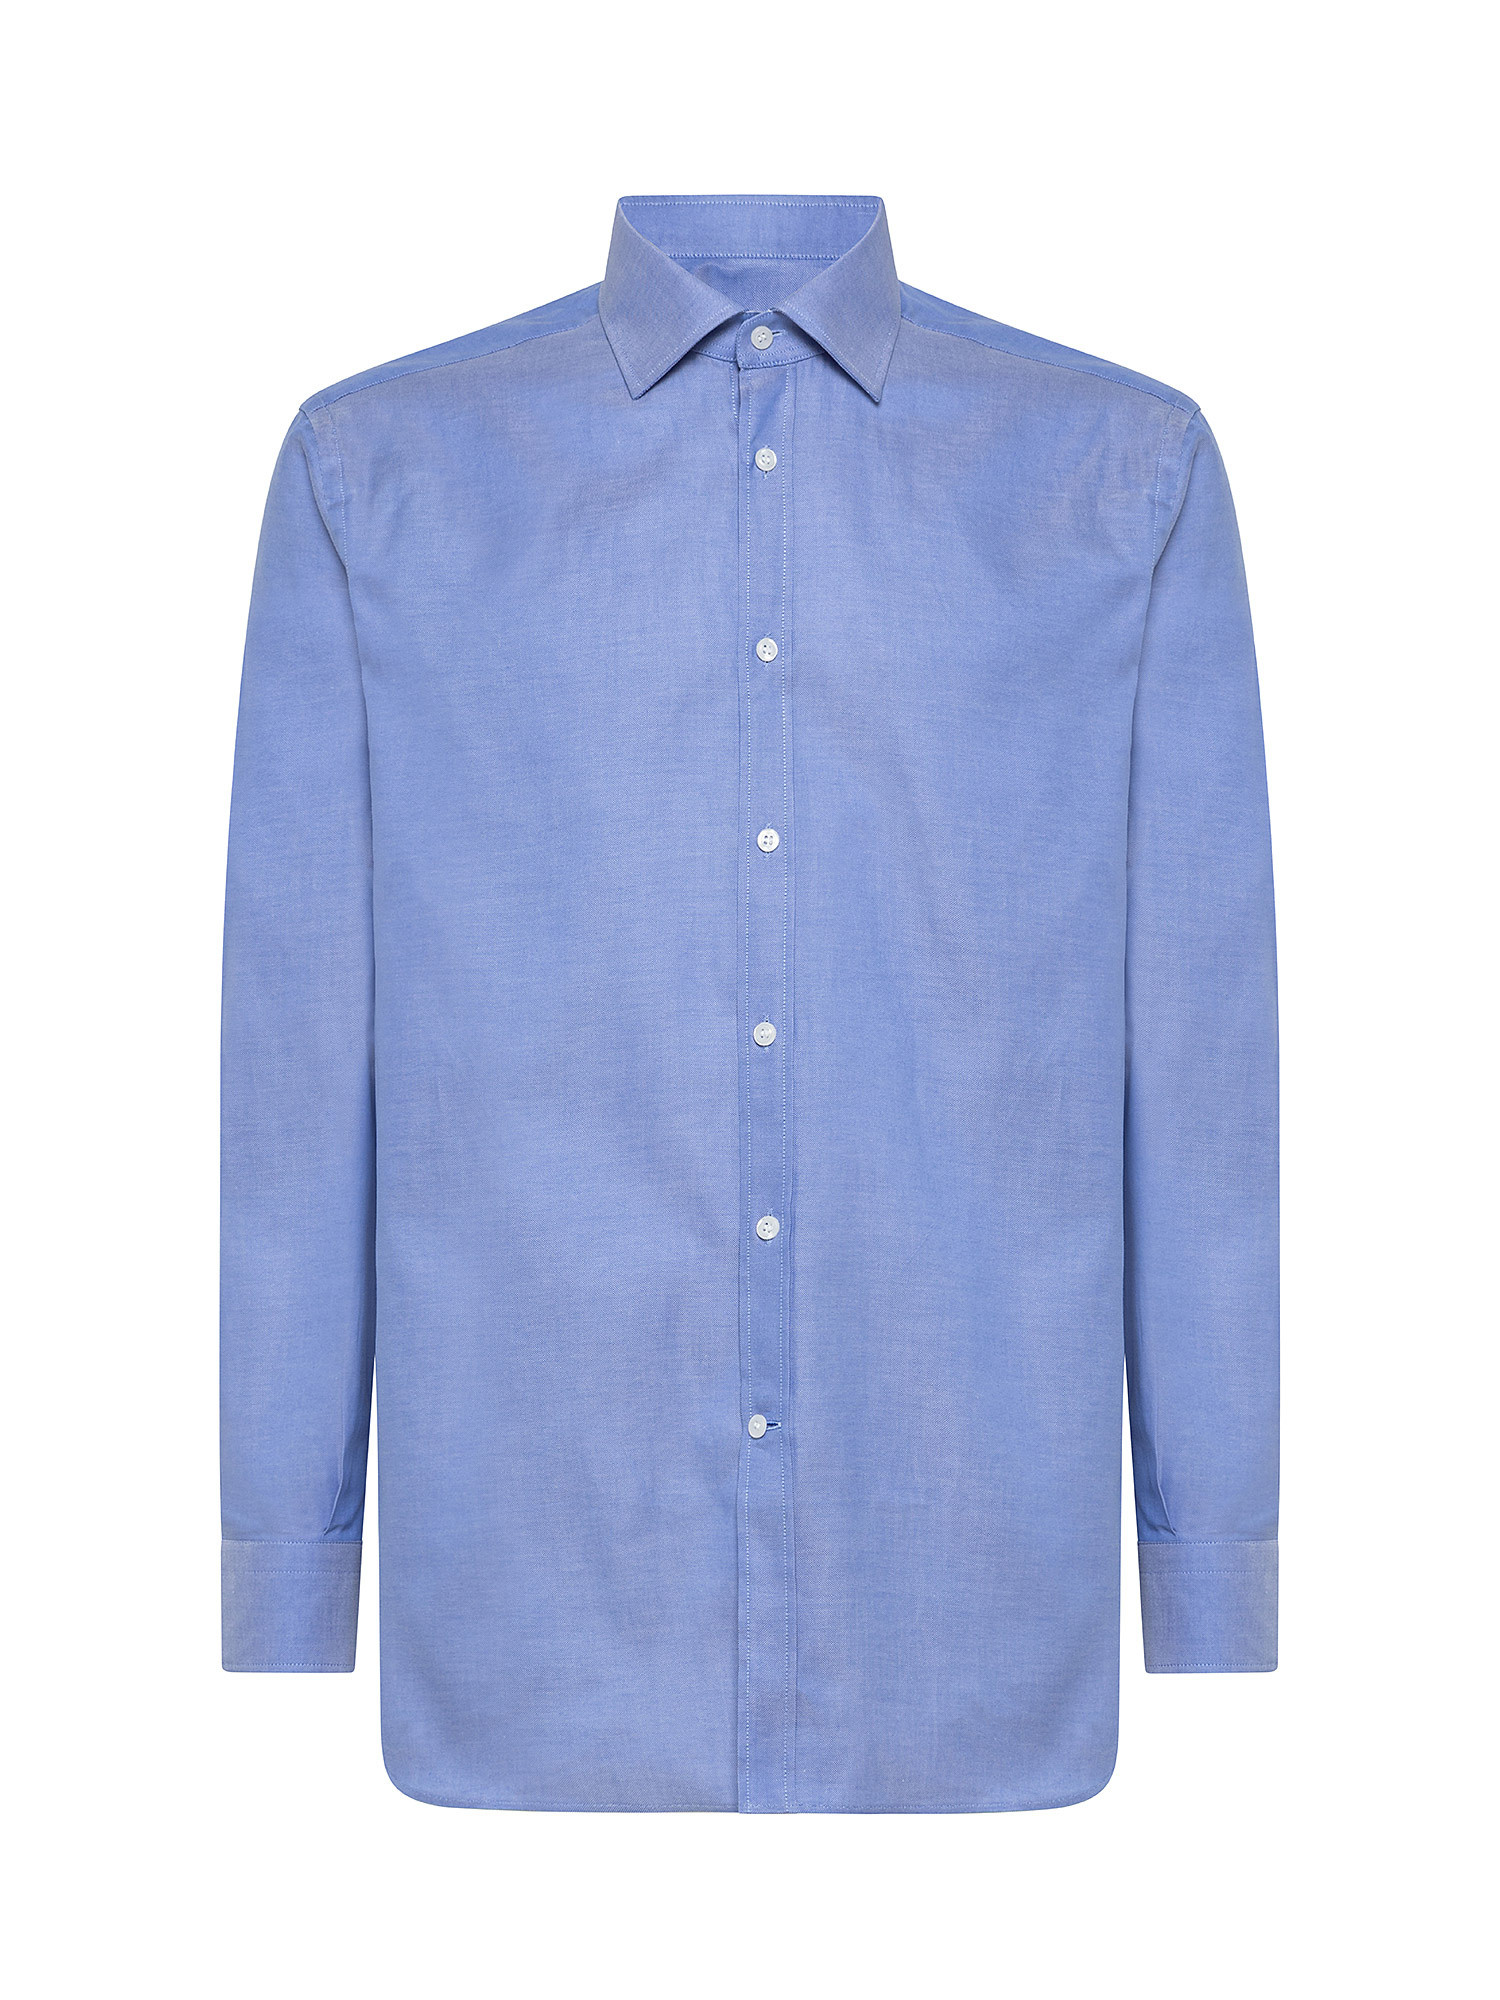 Camicia regular fit in cotone pinpoint doppio ritorto, Azzurro, large